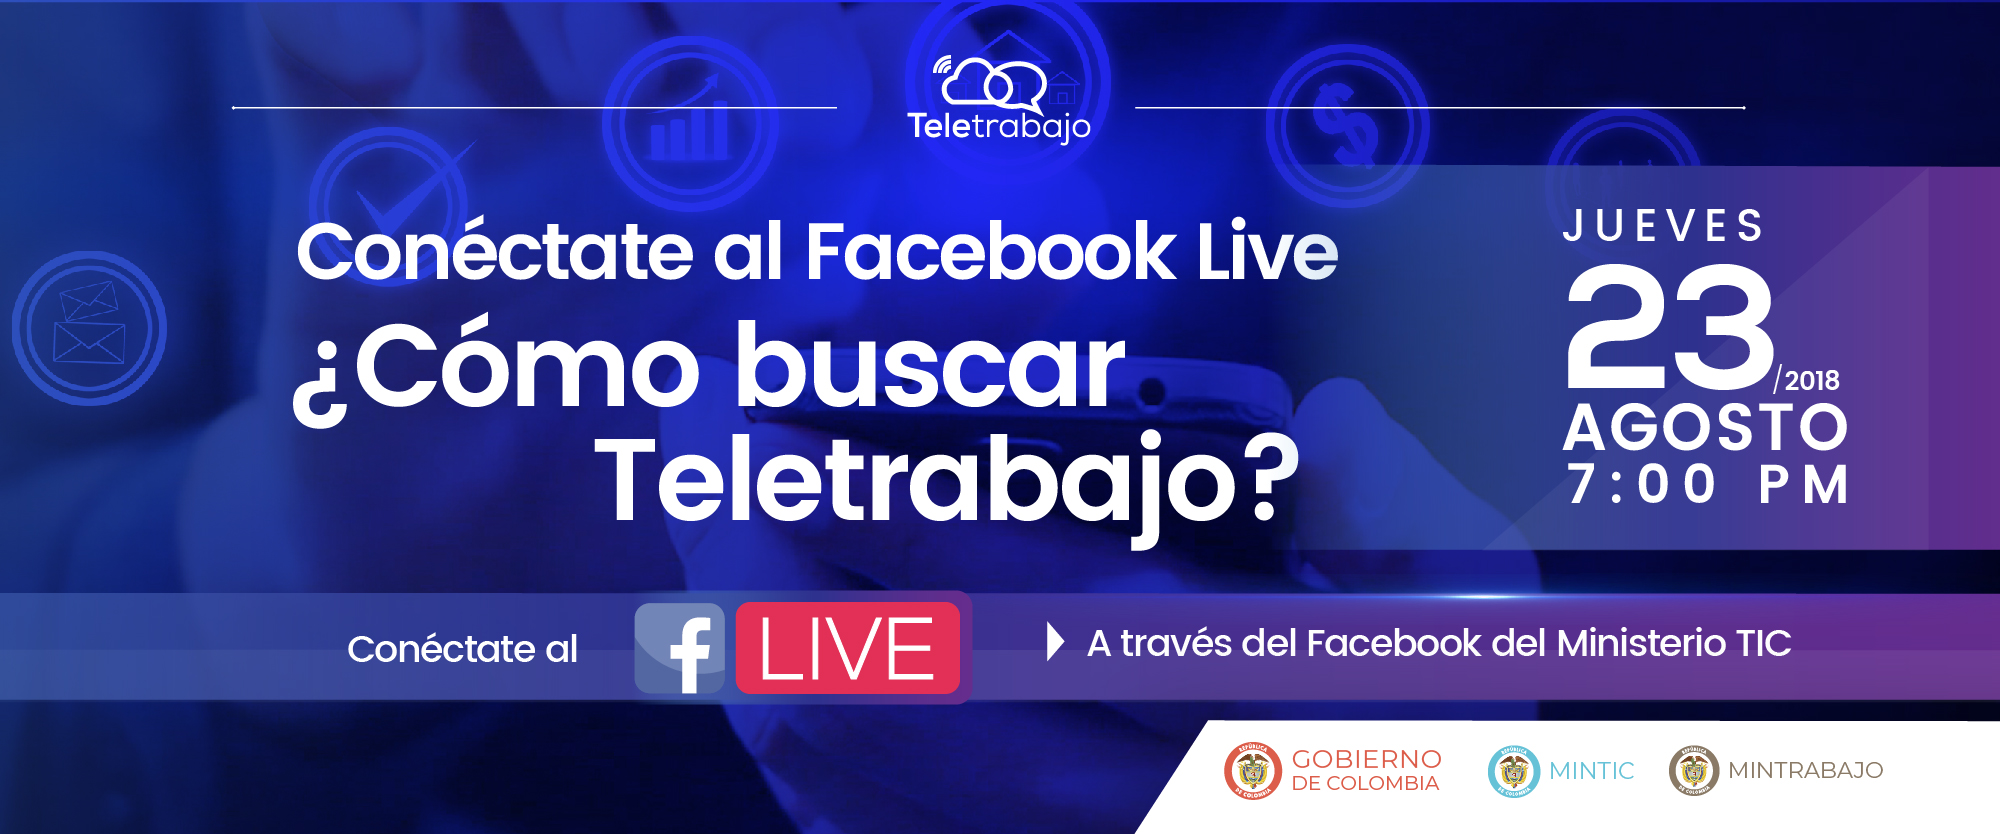 Conéctate al Facebook Live ¿Cómo buscar Teletrabajo?